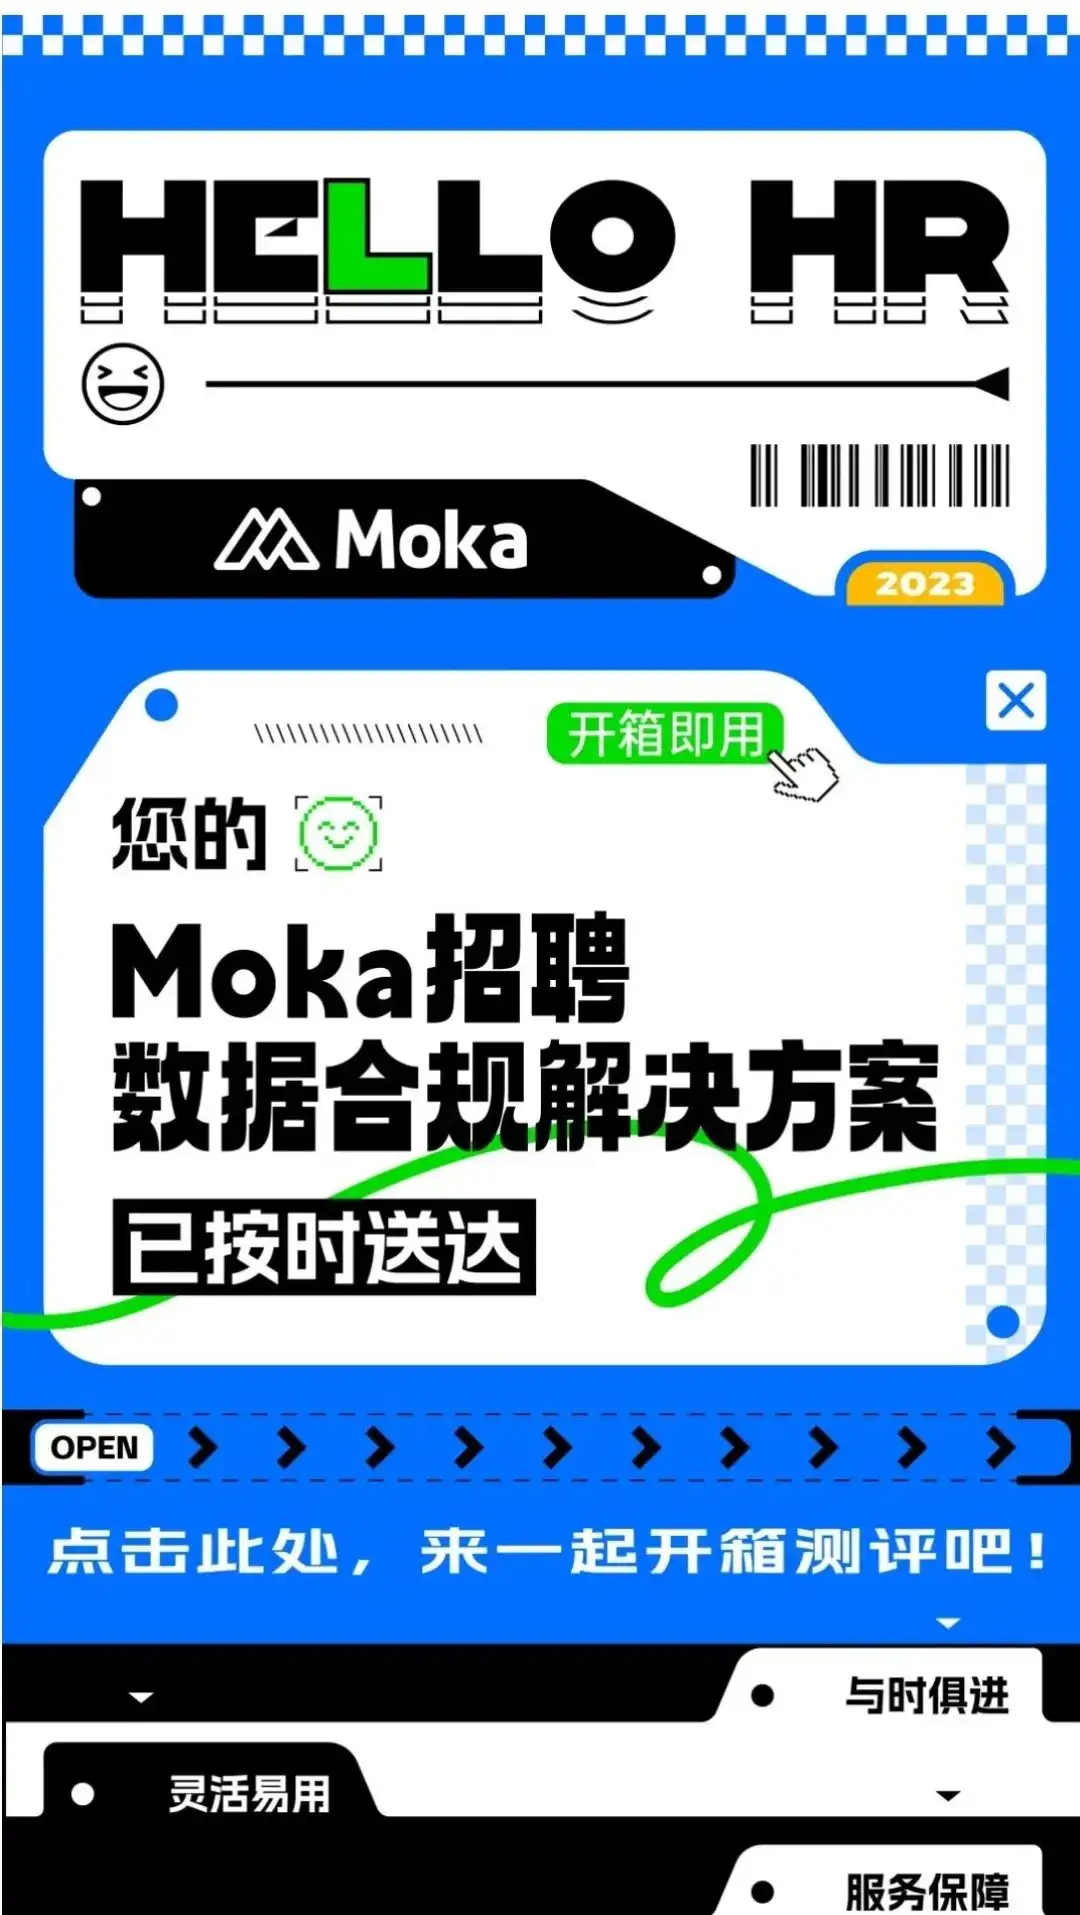 解决方案丨Moka是如何做好跨国企业招聘本地化选型的？-Moka官网